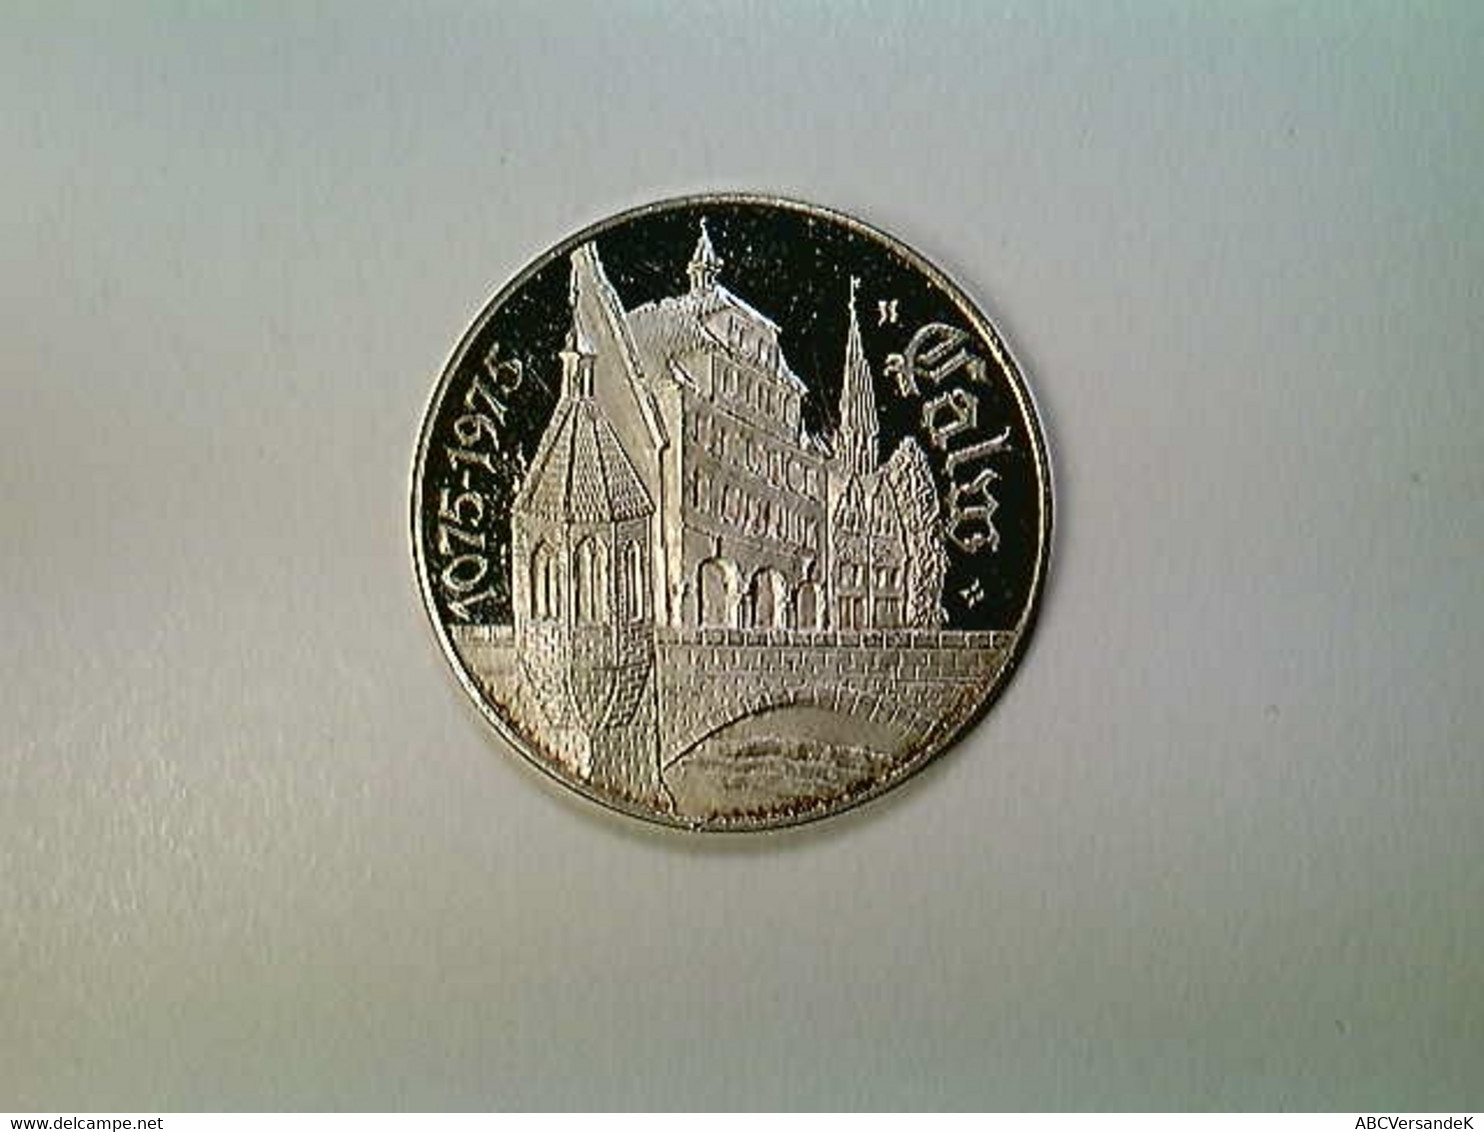 Medaille Calw, 900 Jahre 1075-1975, Silber 999 - Numismatiek